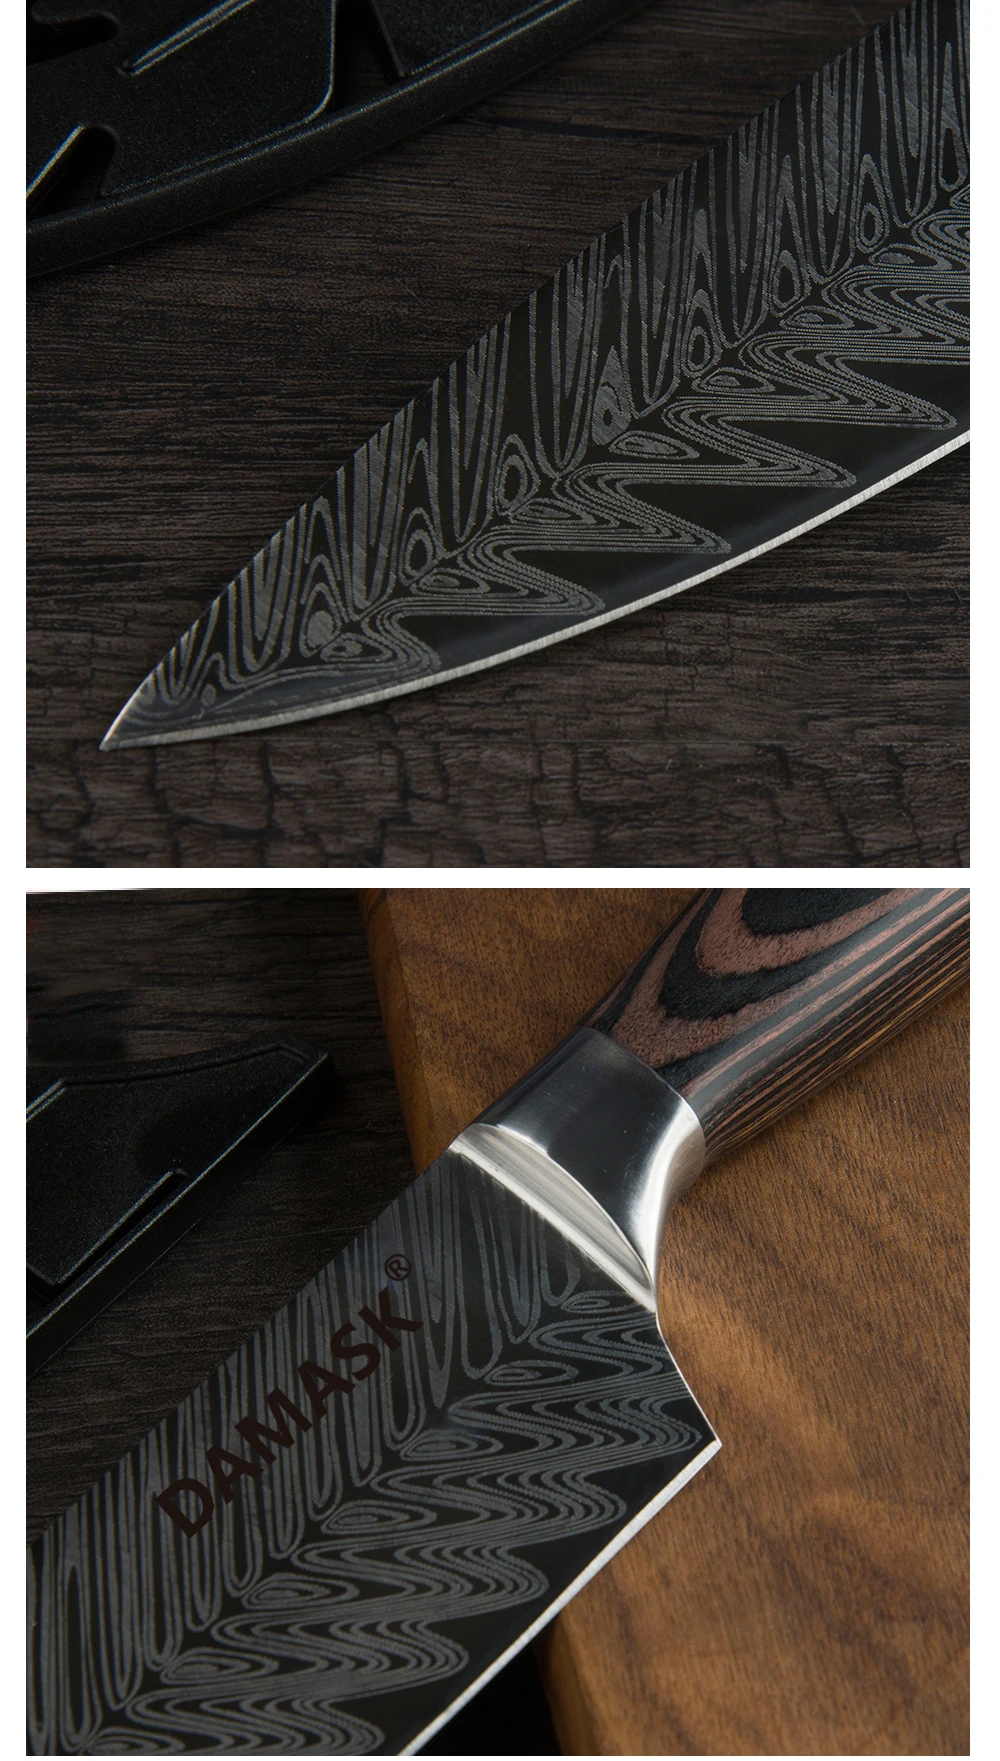 Дамасские высококачественные кухонные ножи с цветной деревянной ручкой, нож для нарезки Santoku, острый край, нож для повара из нержавеющей стали